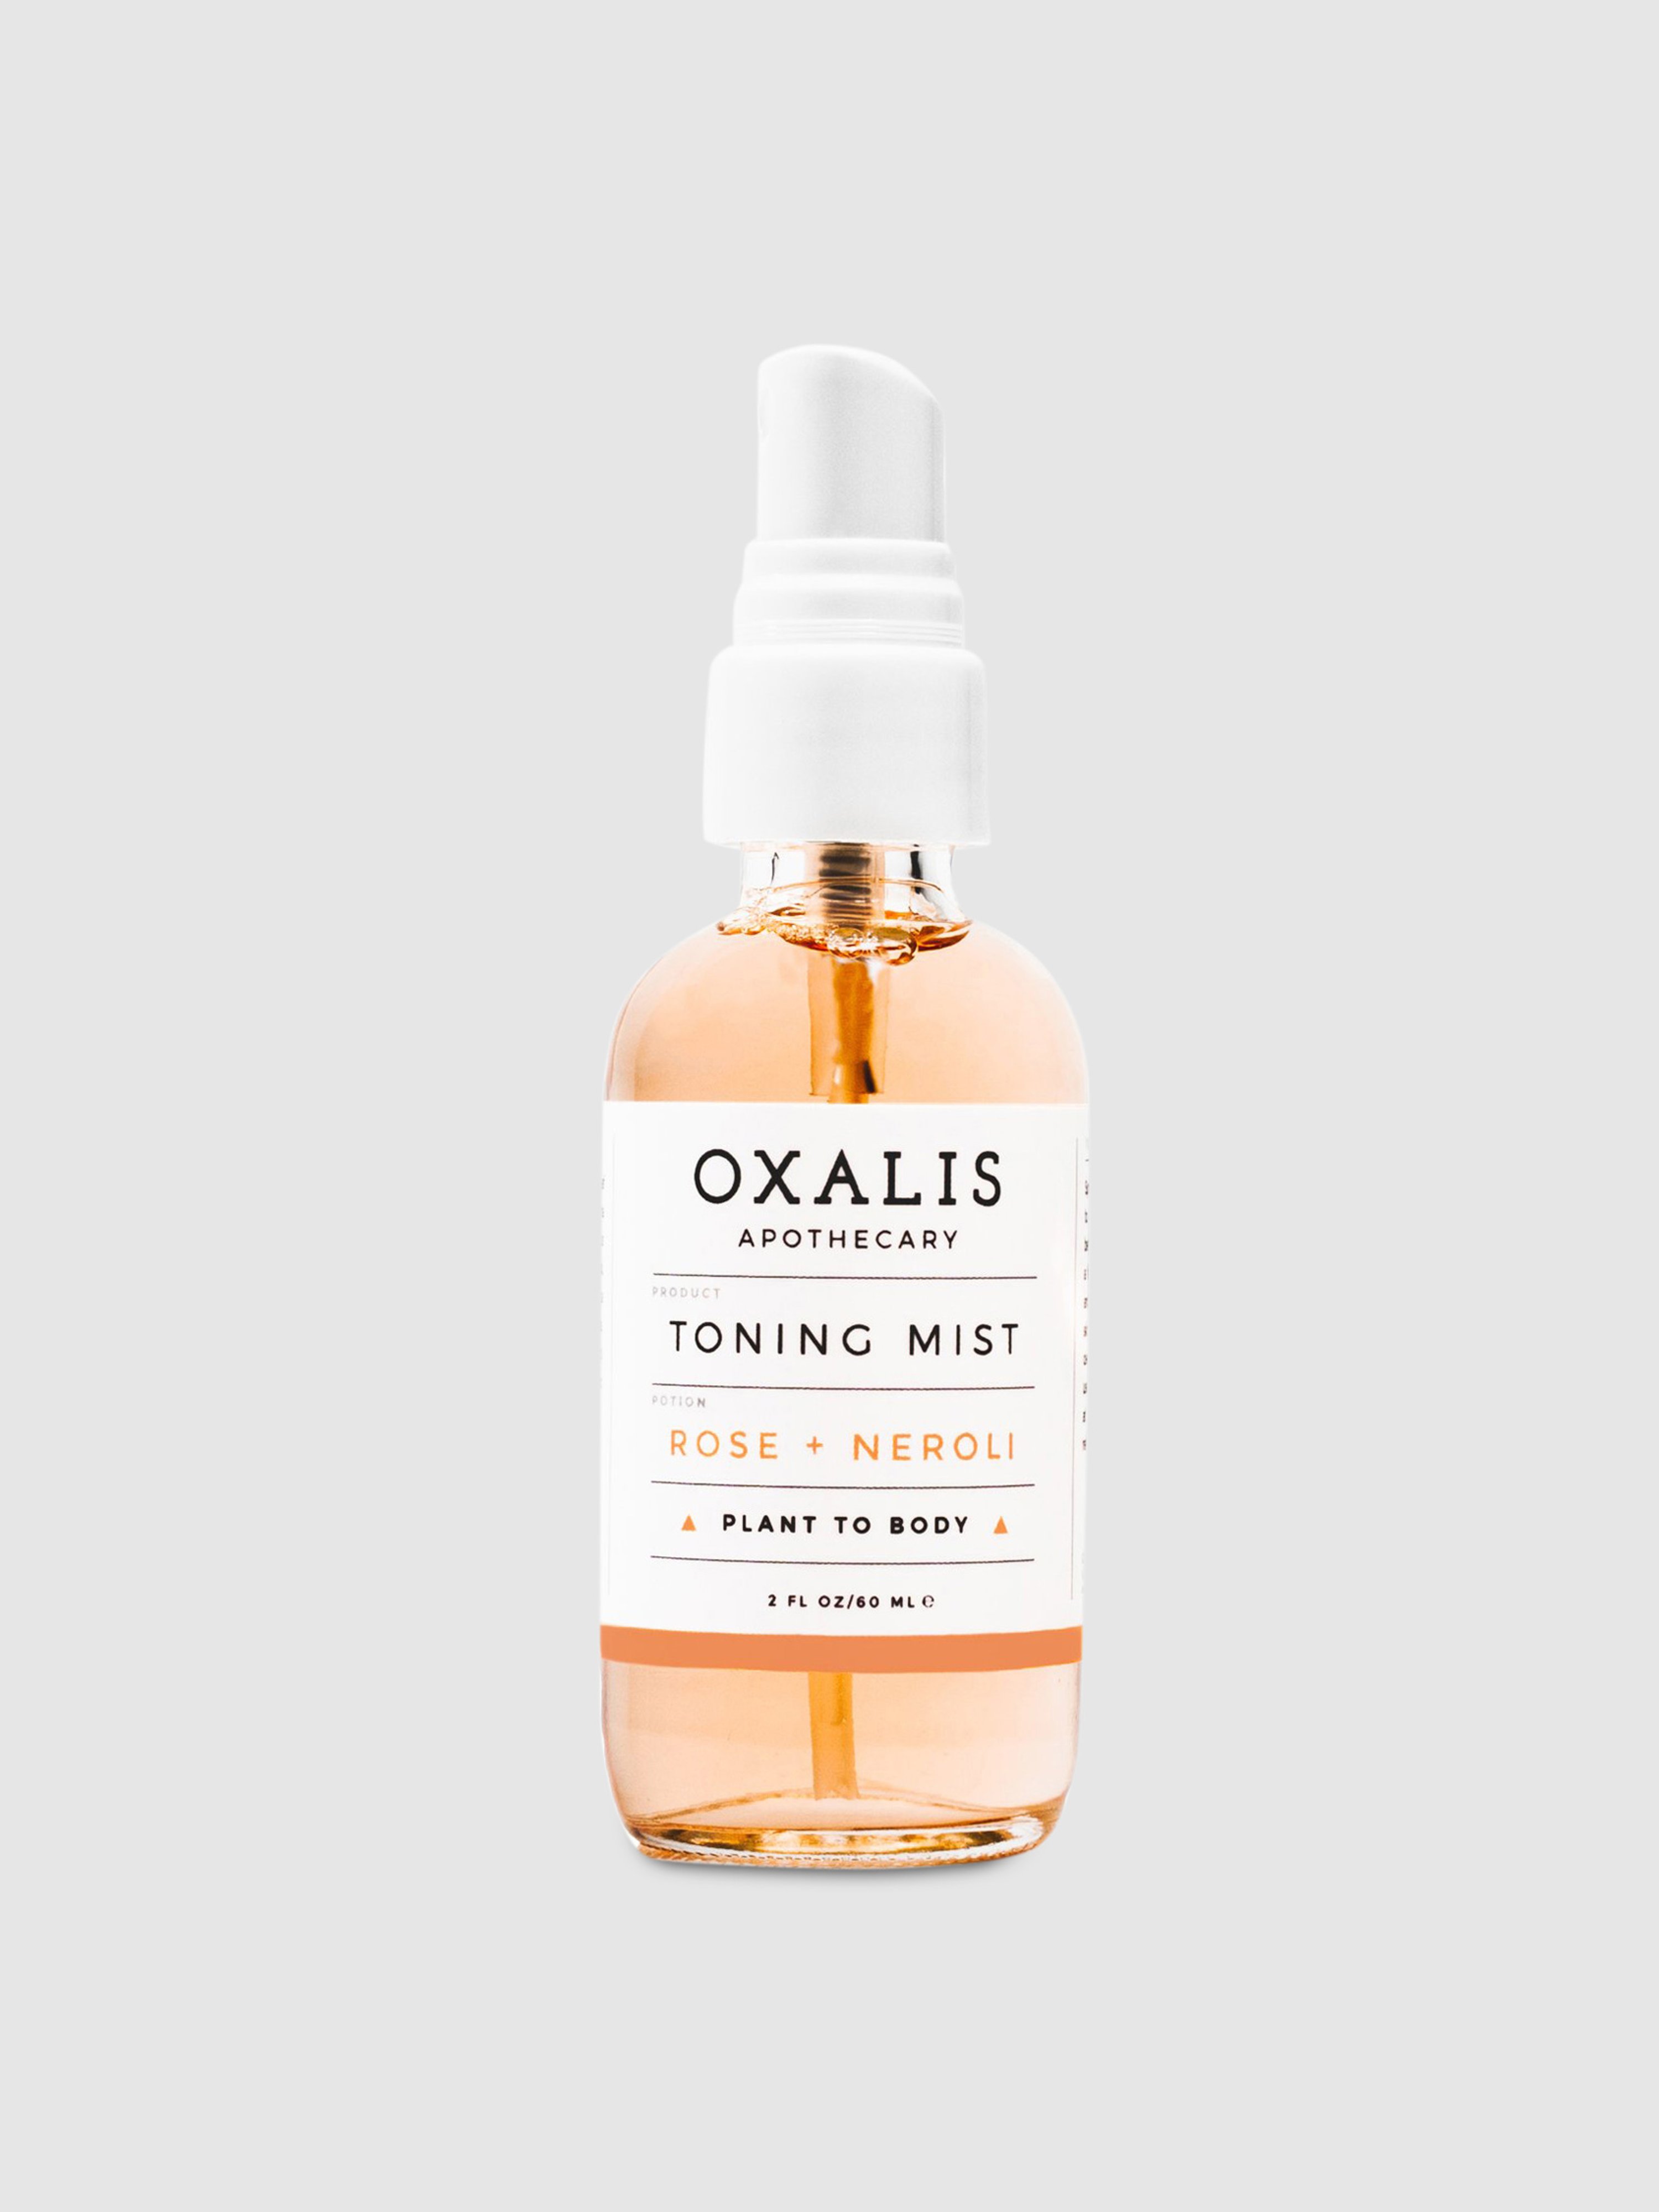 Oxalis Apothecary Toning Mist | Rose + Neroli